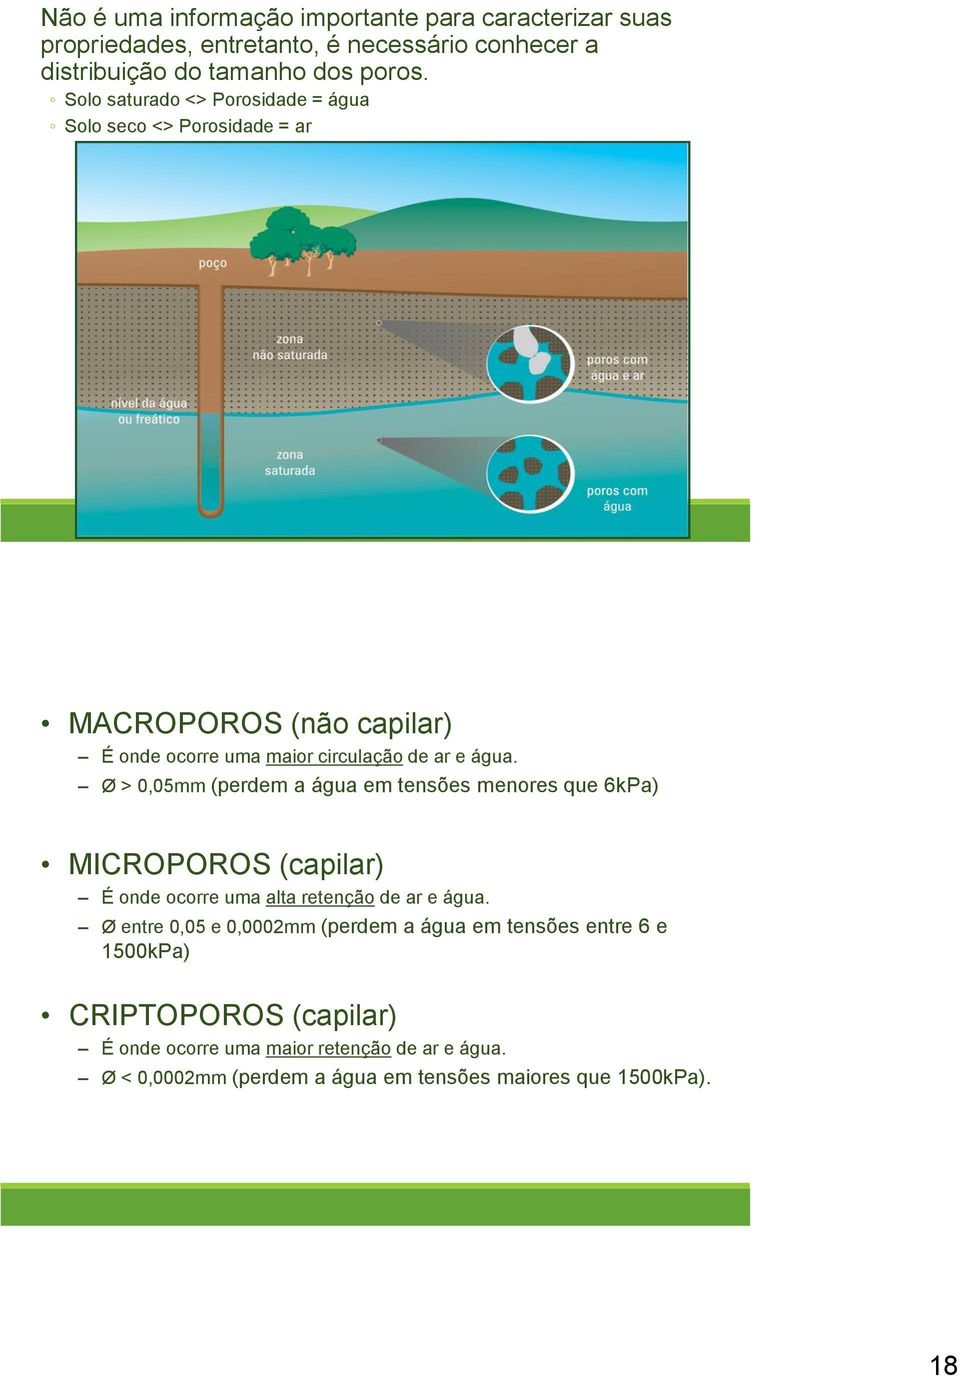 Ø > 0,05mm (perdem a água em tensões menores que 6kPa) MICROPOROS (capilar) É onde ocorre uma alta retenção de ar e água.